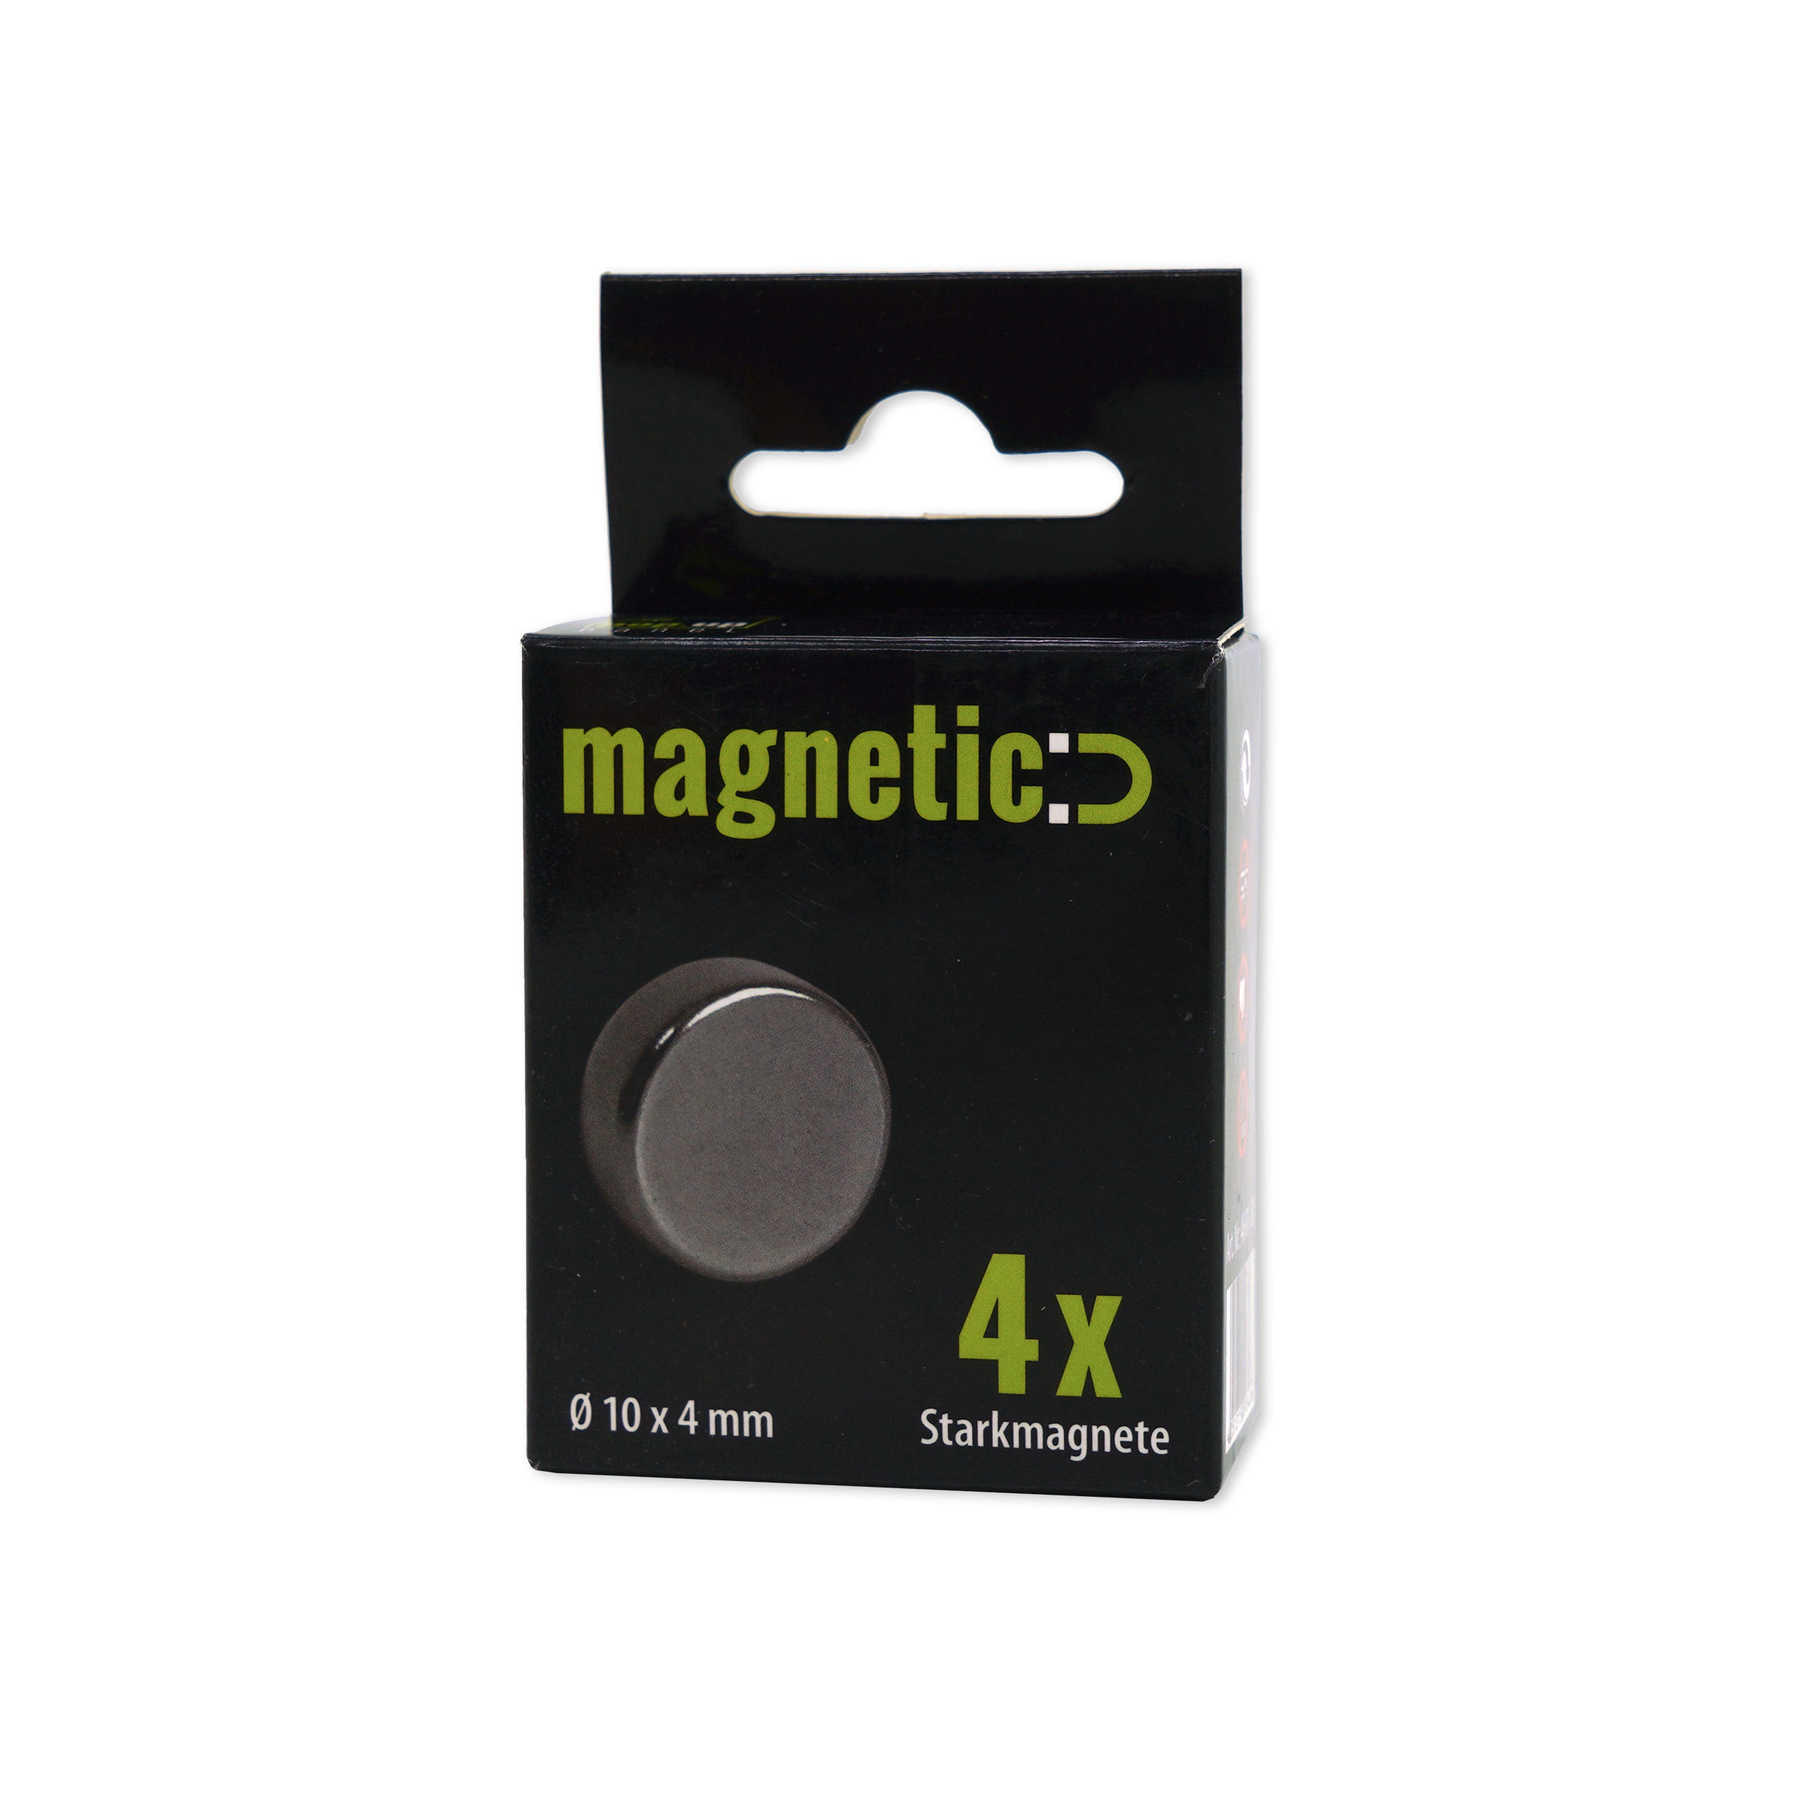             Set van 4 ronde sterke magneten in 10 x 4 mm
        